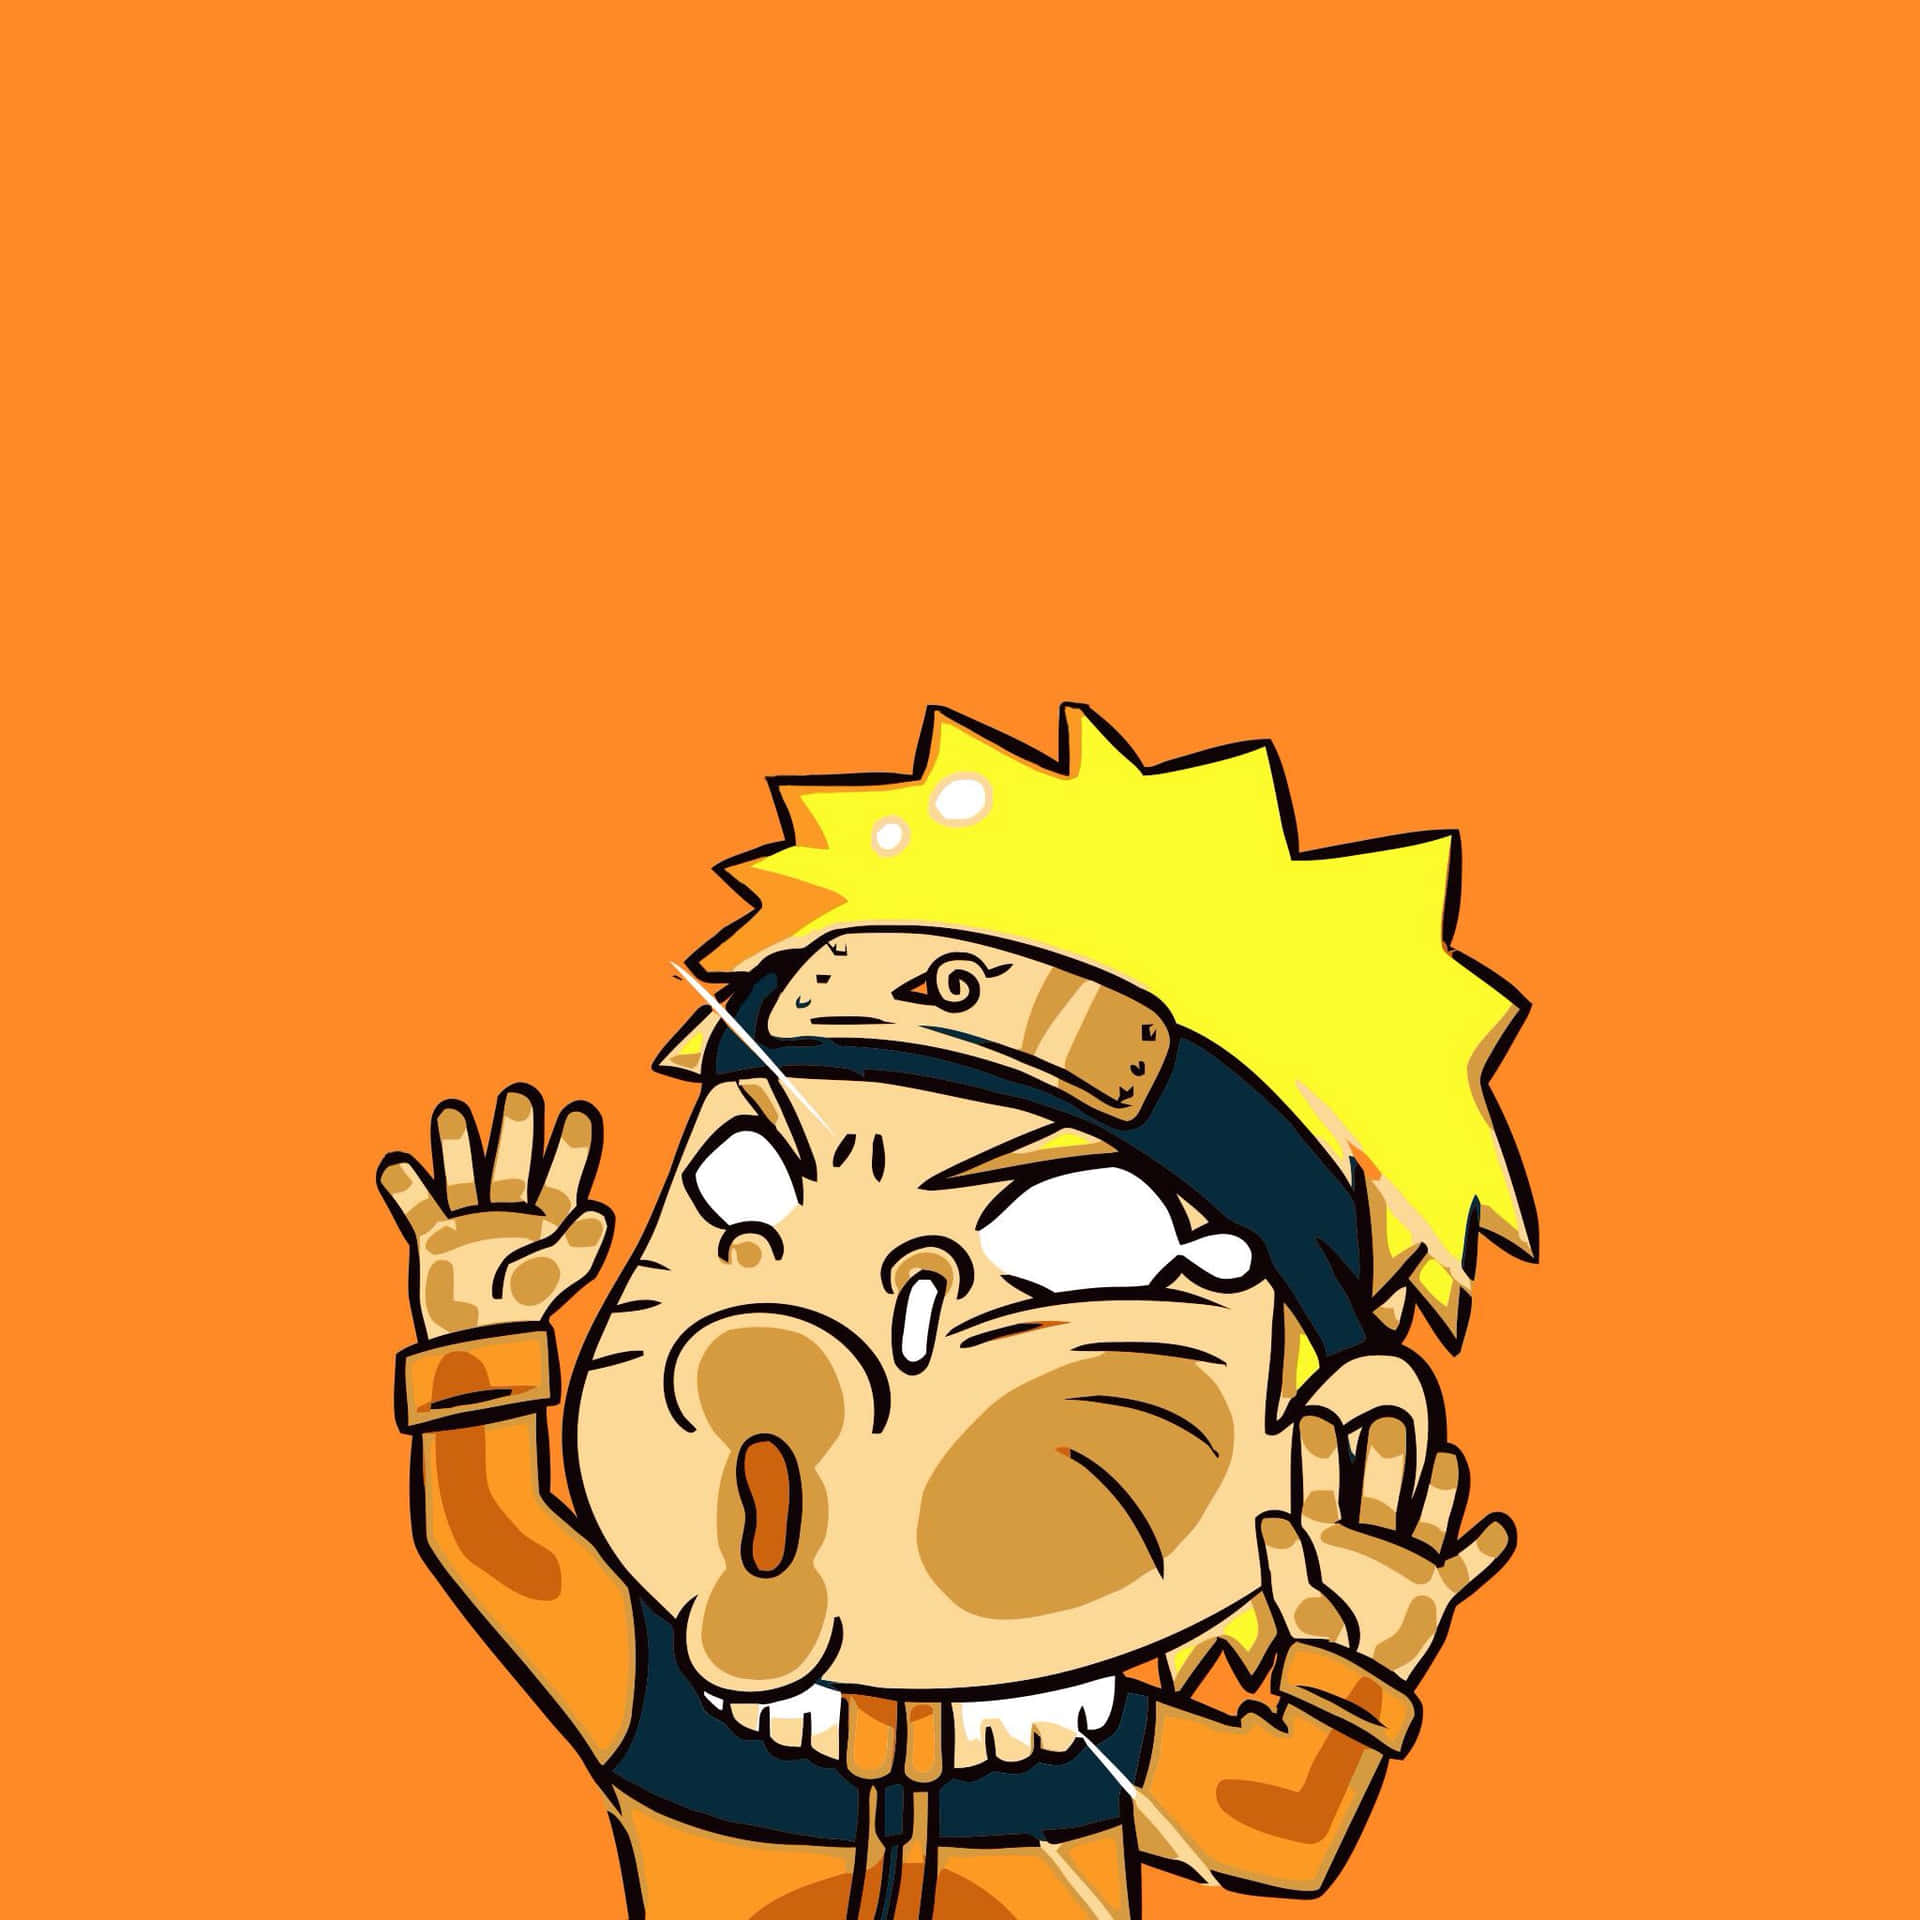 100+] Anime Naruto Wallpapers